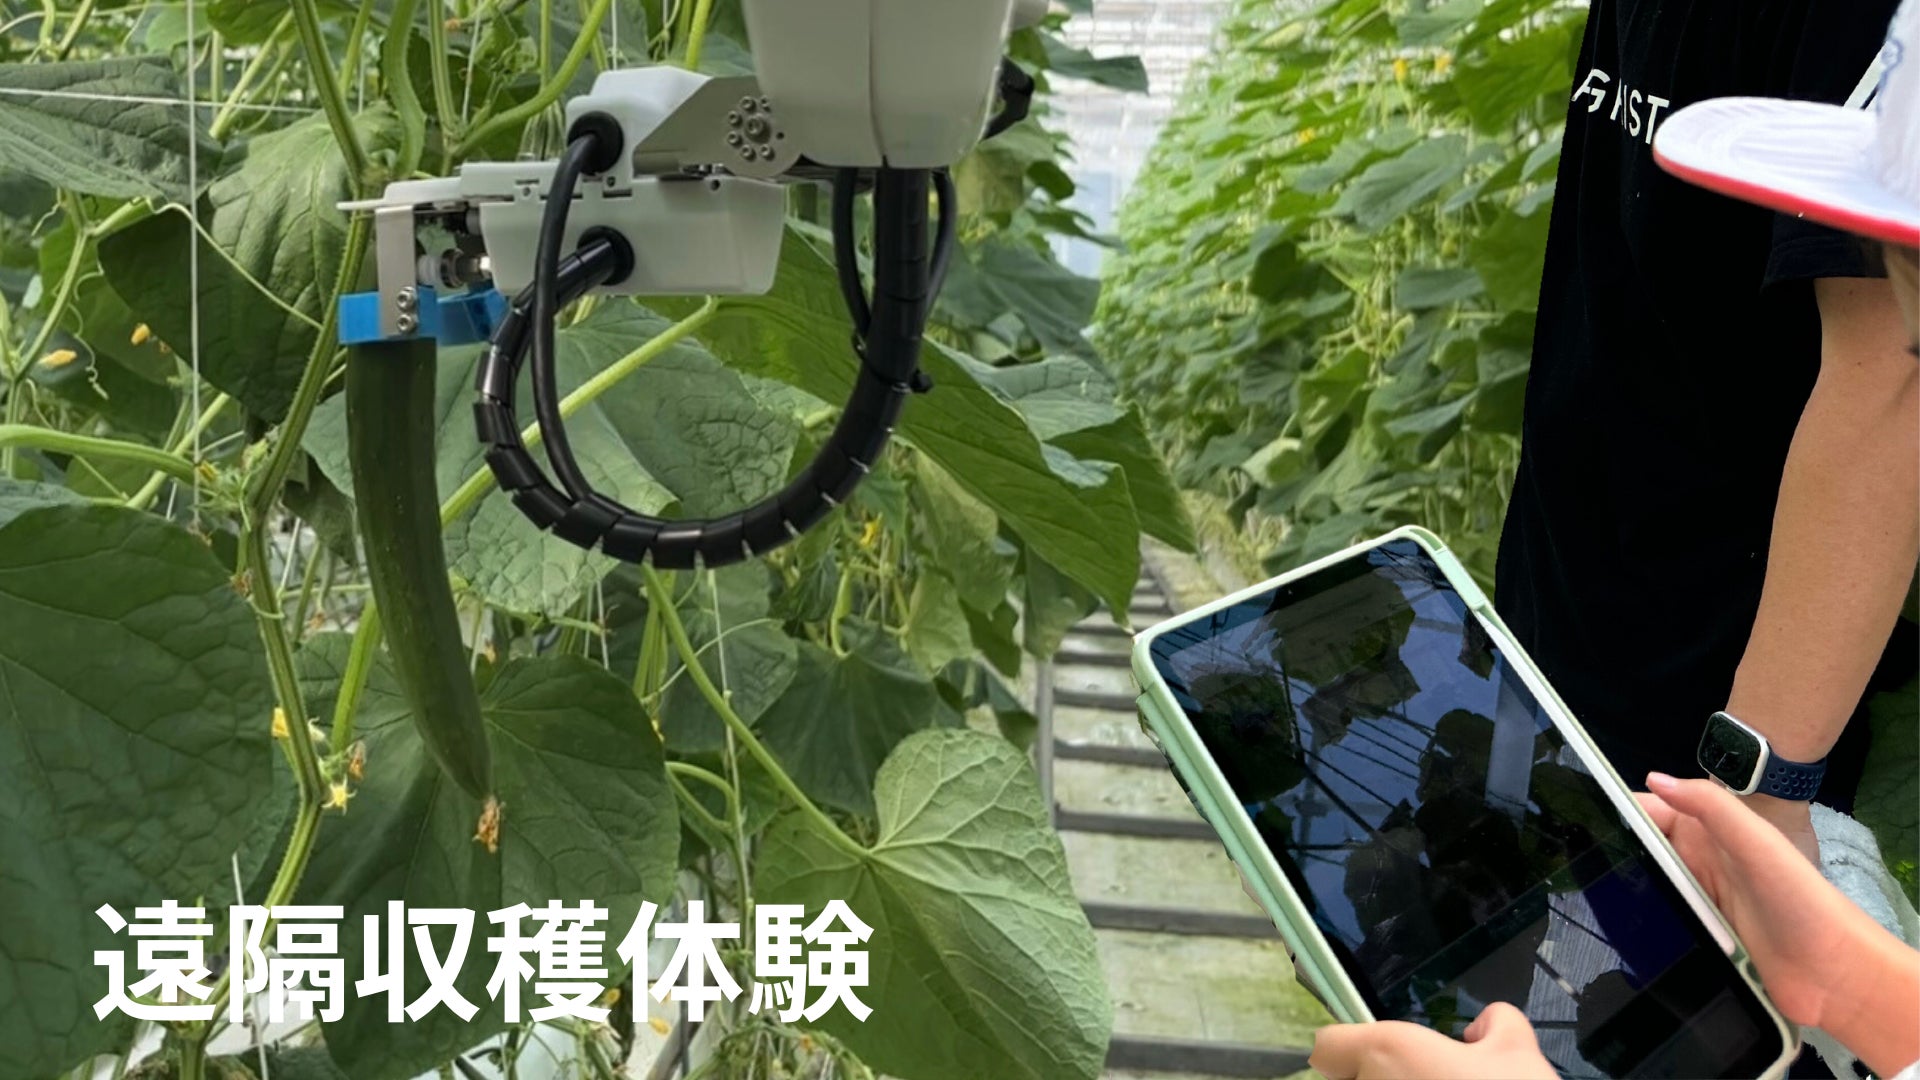 AGRIST、福島タネセンターで地元小学生向けにスマート農業体験のサブ画像1